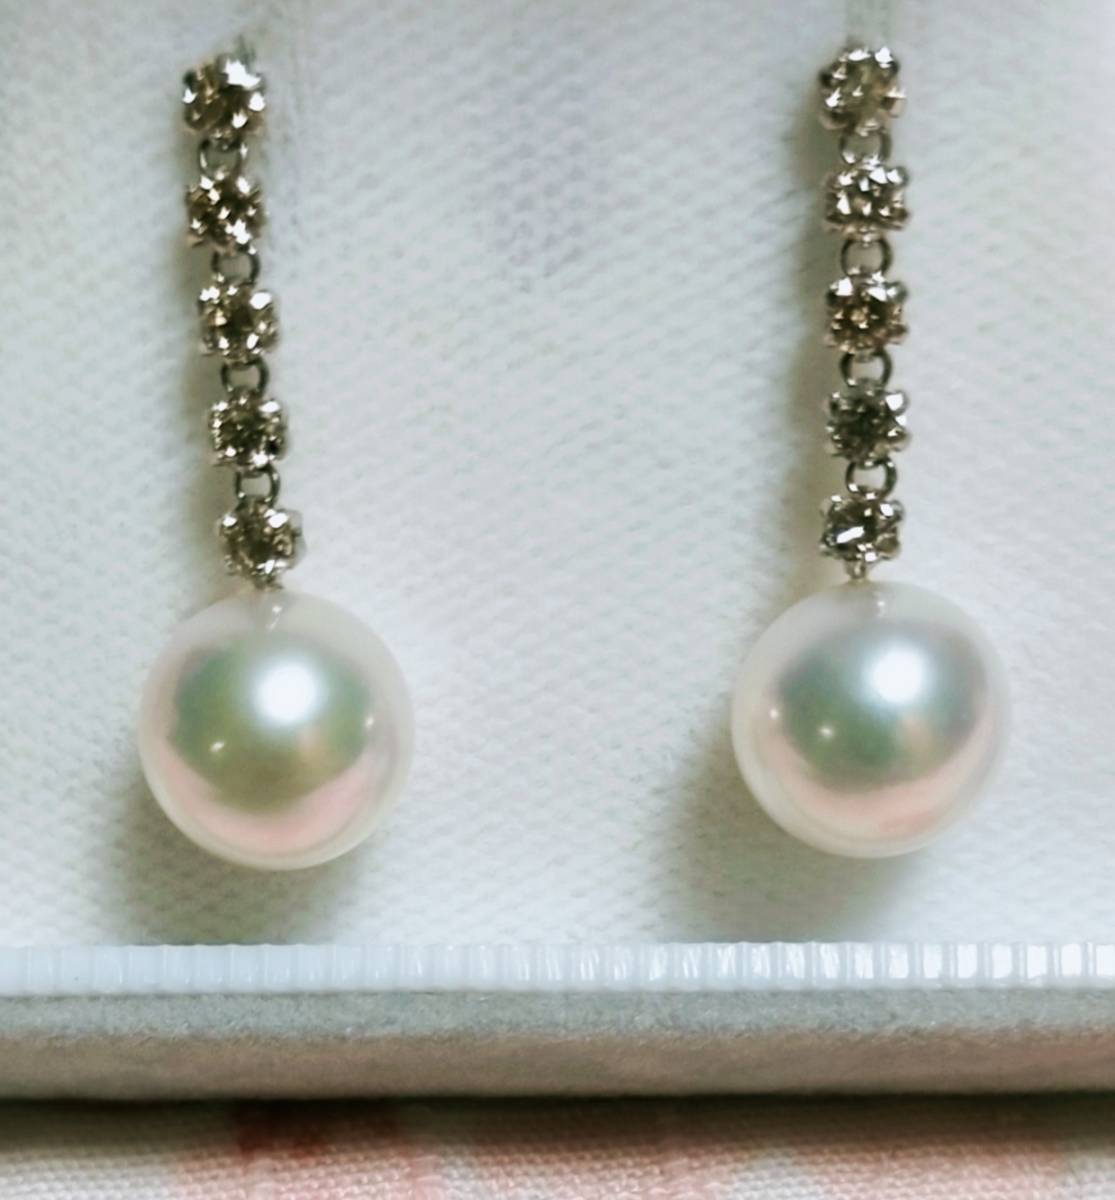 花珠 真珠 ピアス アコヤ真珠8.5mm セミロング 天然 ダイヤモンド 0.5ct あこや 本真珠 オーロラ 花珠 ソーティング付 ブラピアス 未使用品